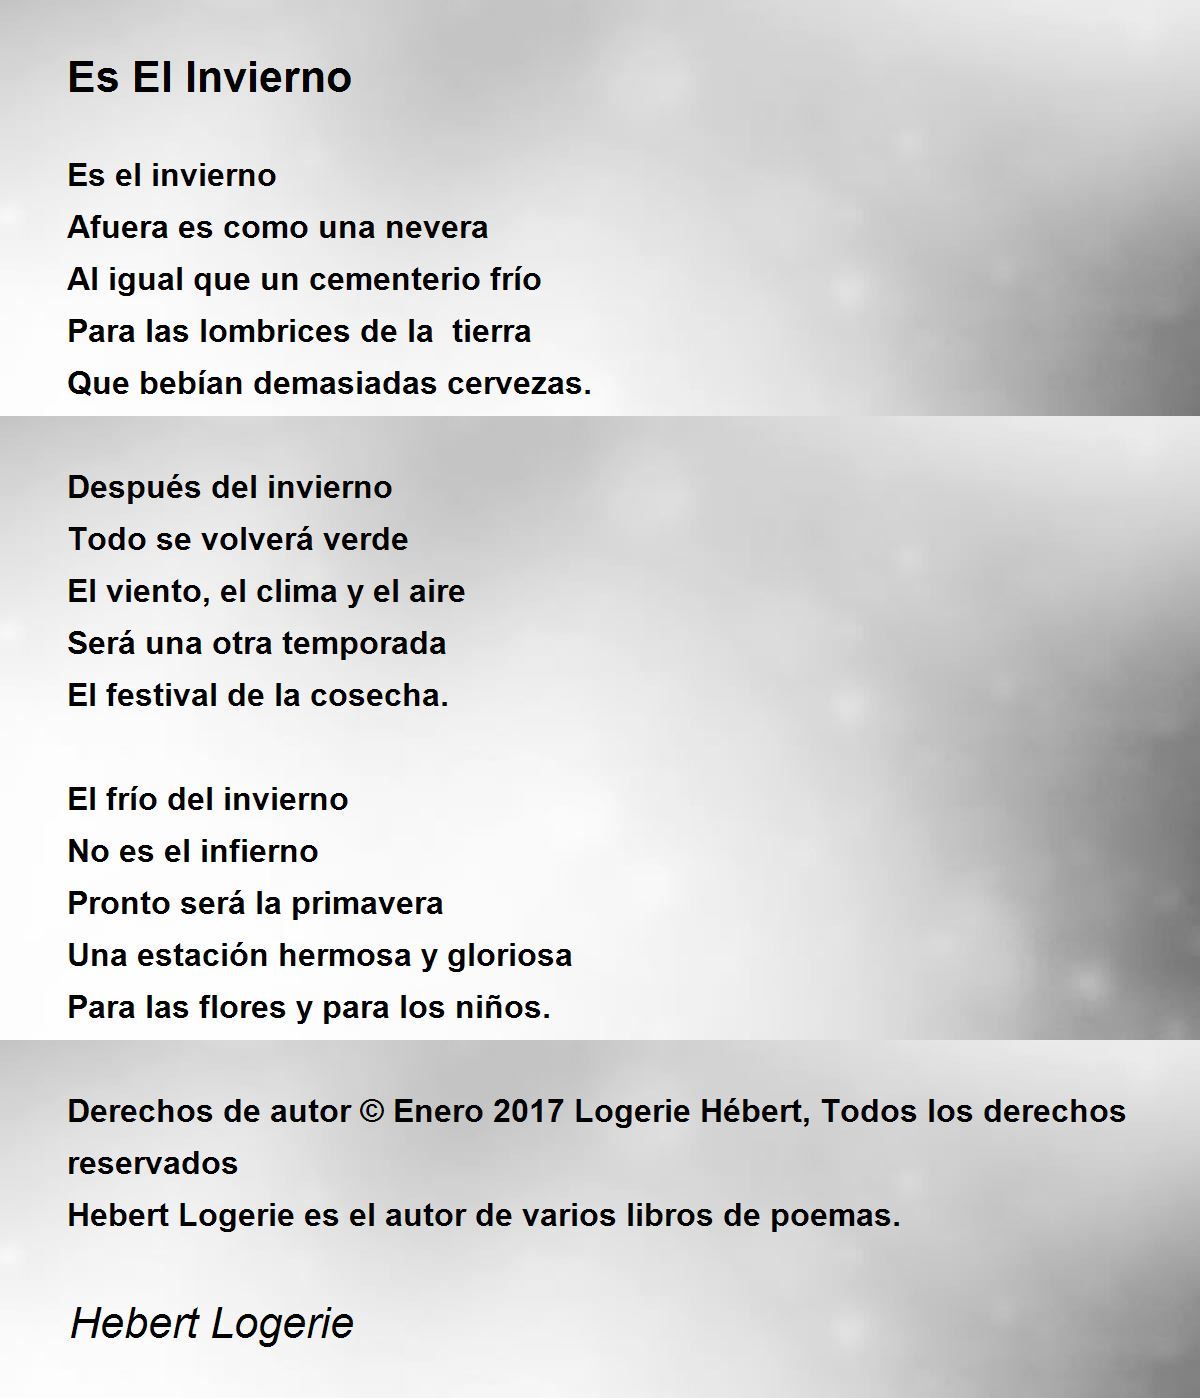 Es El Invierno - Es El Invierno Poem by Hebert Logerie